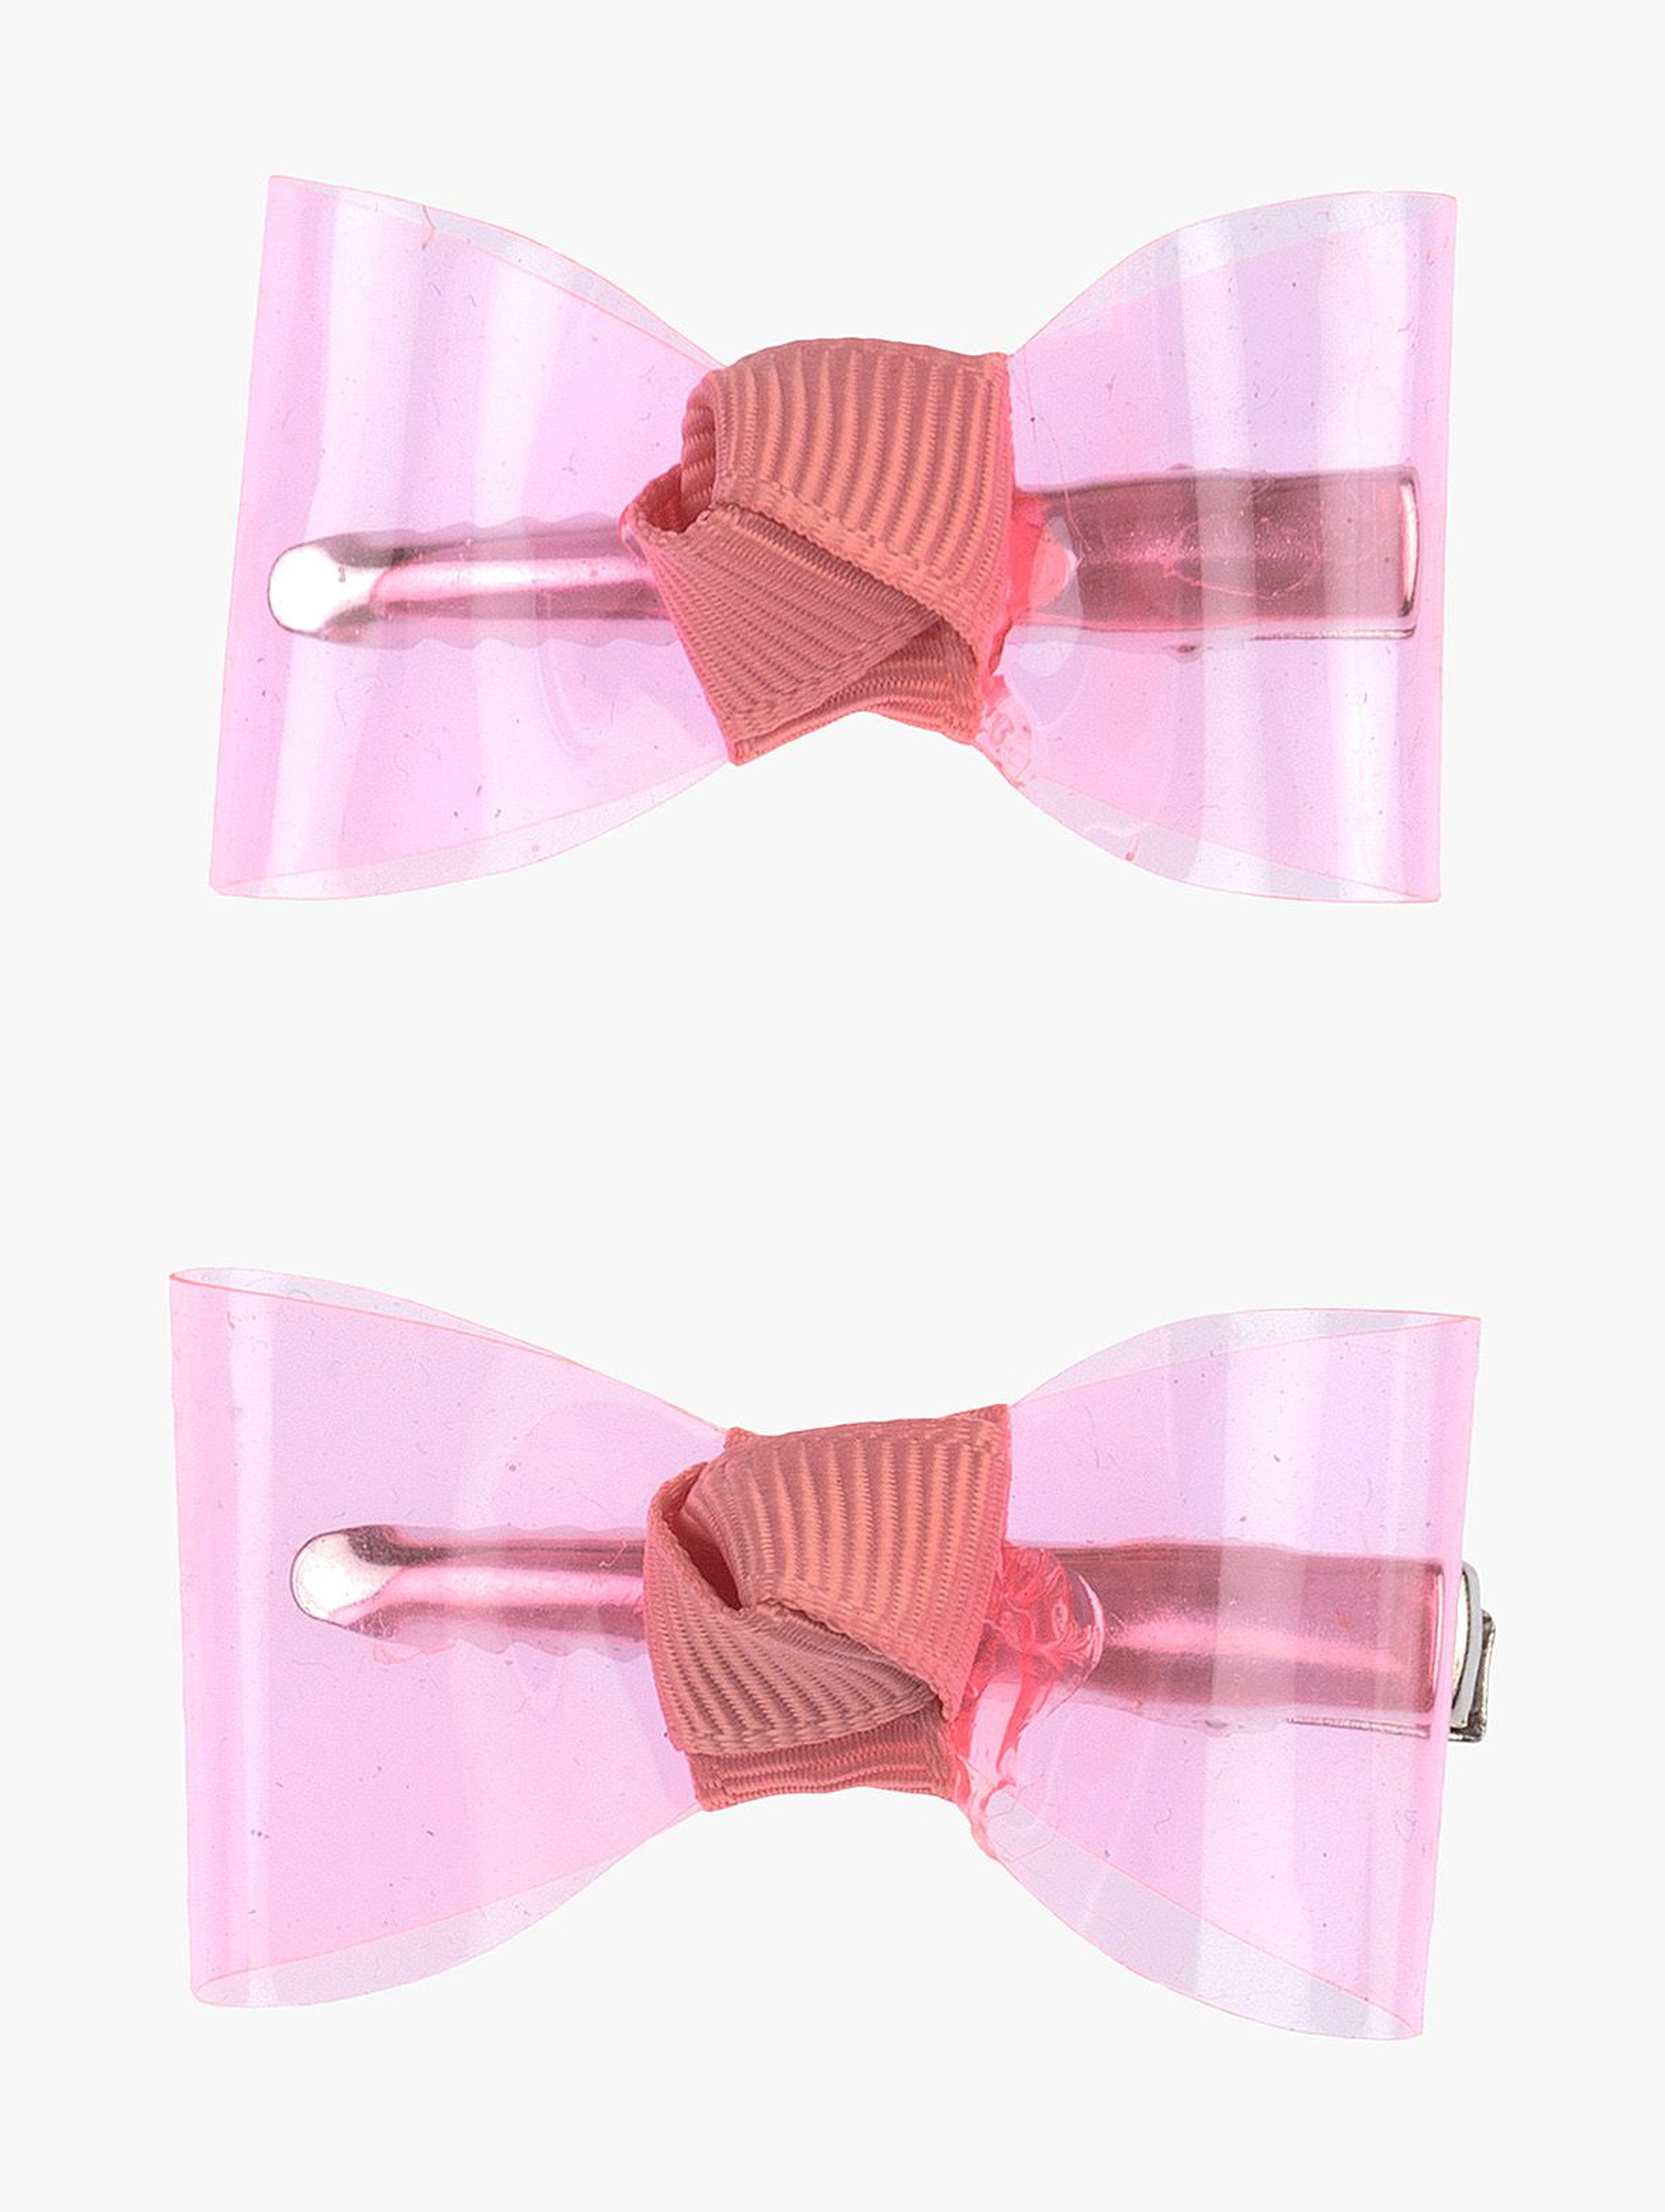 Spinki do włosów różowe przeźroczyste kokardki